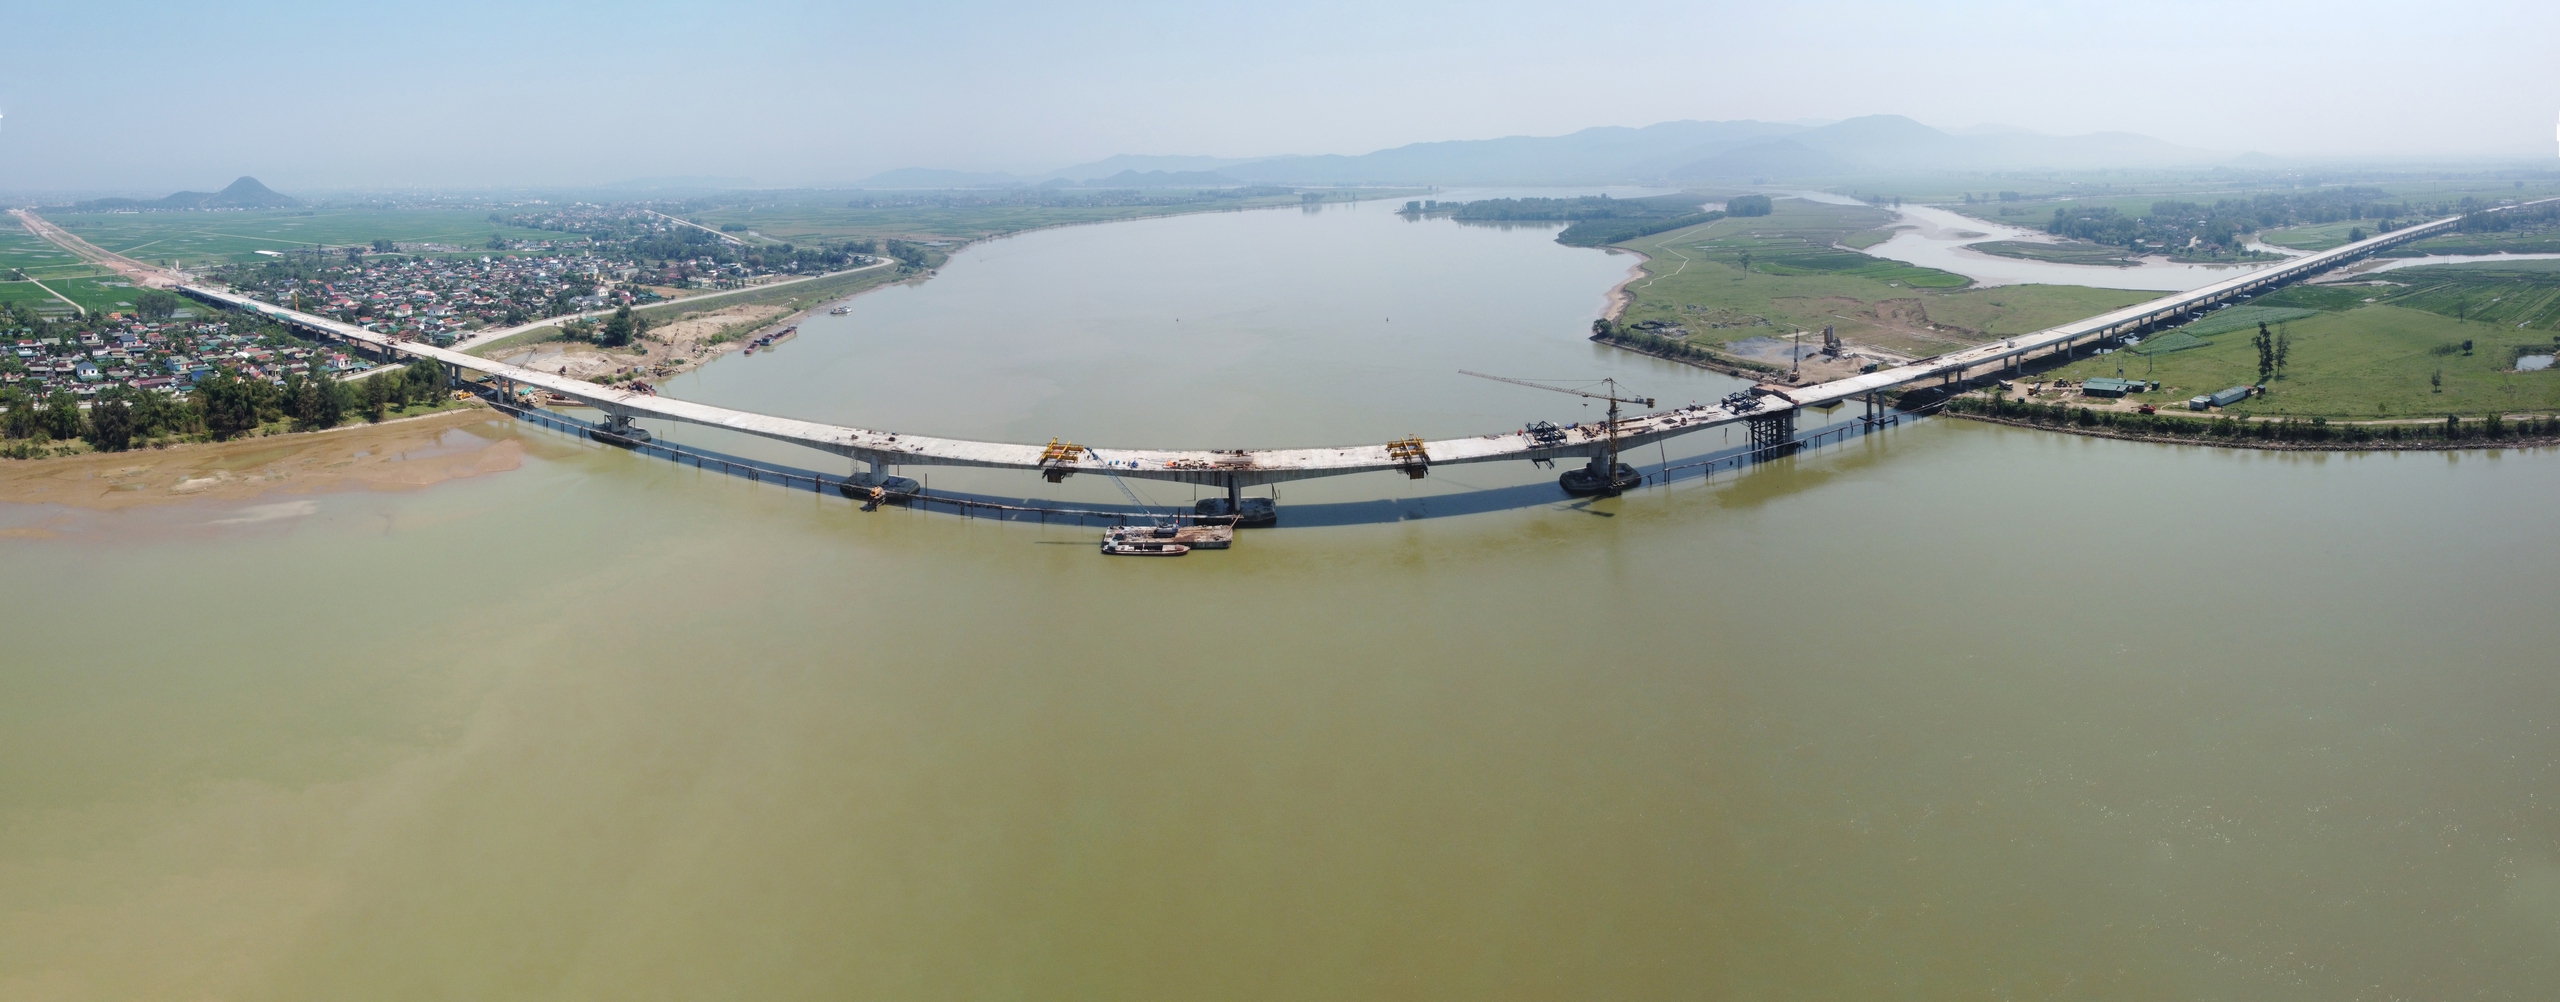 Trên dự án thành phần này có 31 cầu đường bộ (23 cầu dọc tuyến và 8 cầu vượt ngang). Trong đó, cầu Hưng Đức bắc qua sông Lam nối Nghệ An và Hà Tĩnh là cầu vượt sông dài nhất toàn cao tốc Bắc - Nam, đã hợp long hôm 16.3, dự kiến hoàn thành vào đầu tháng 5.